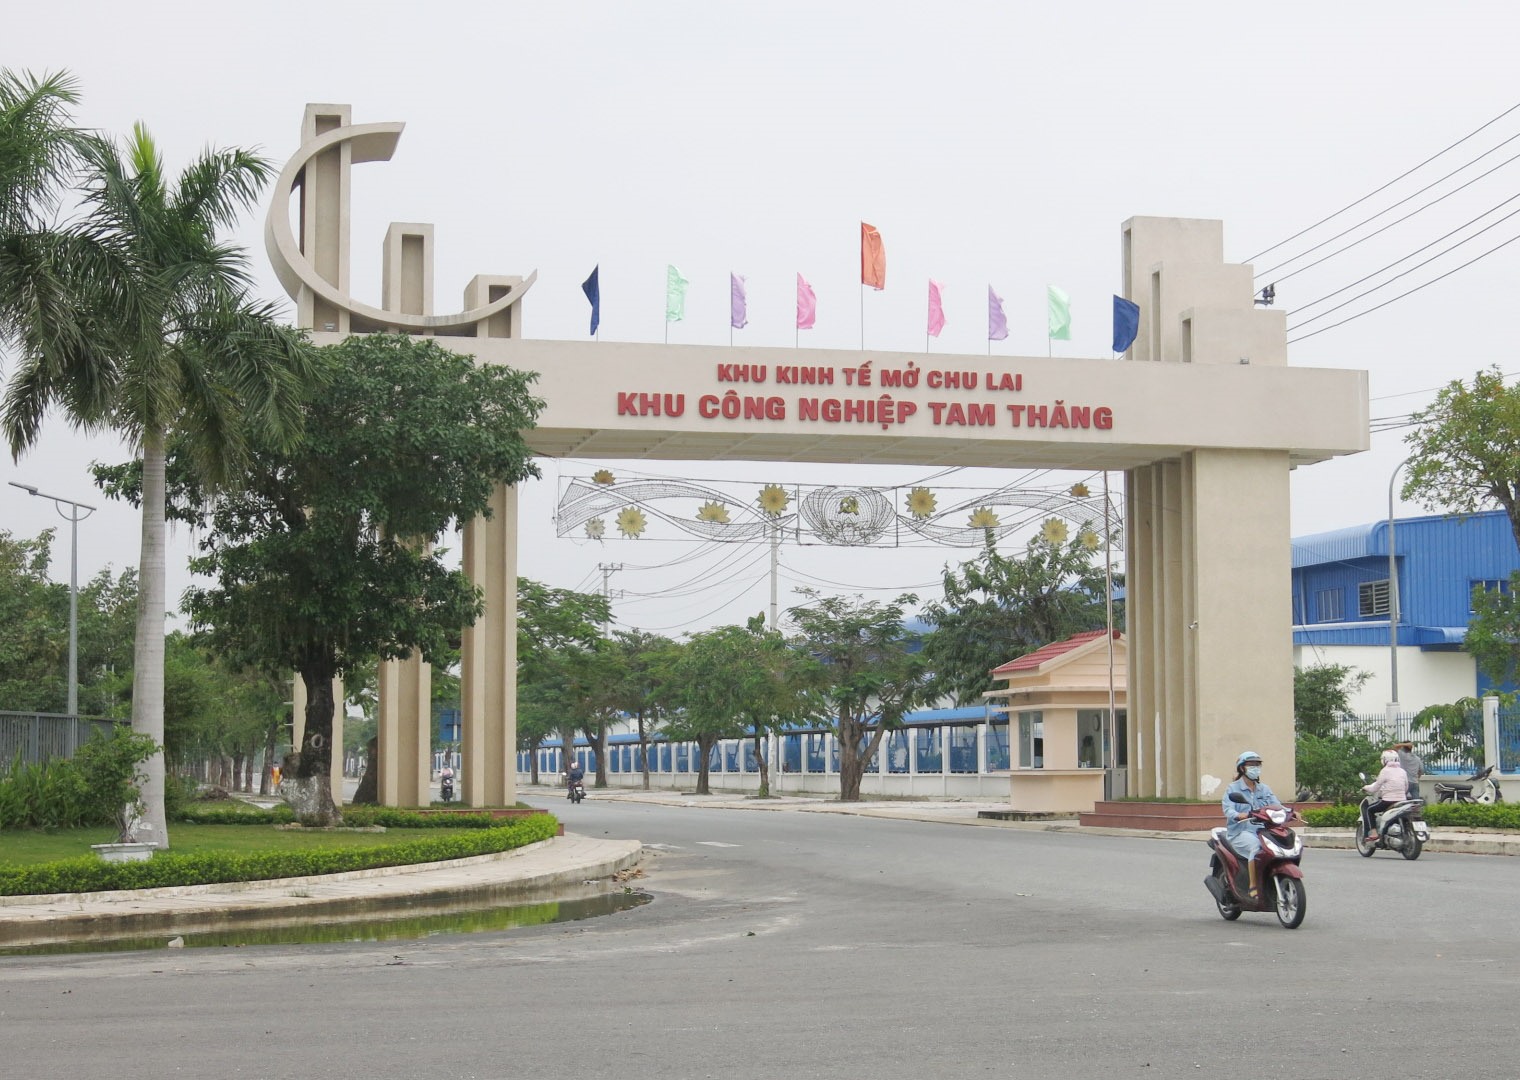 Khu công nghiệp Tam Thăng tỉnh Quảng Nam